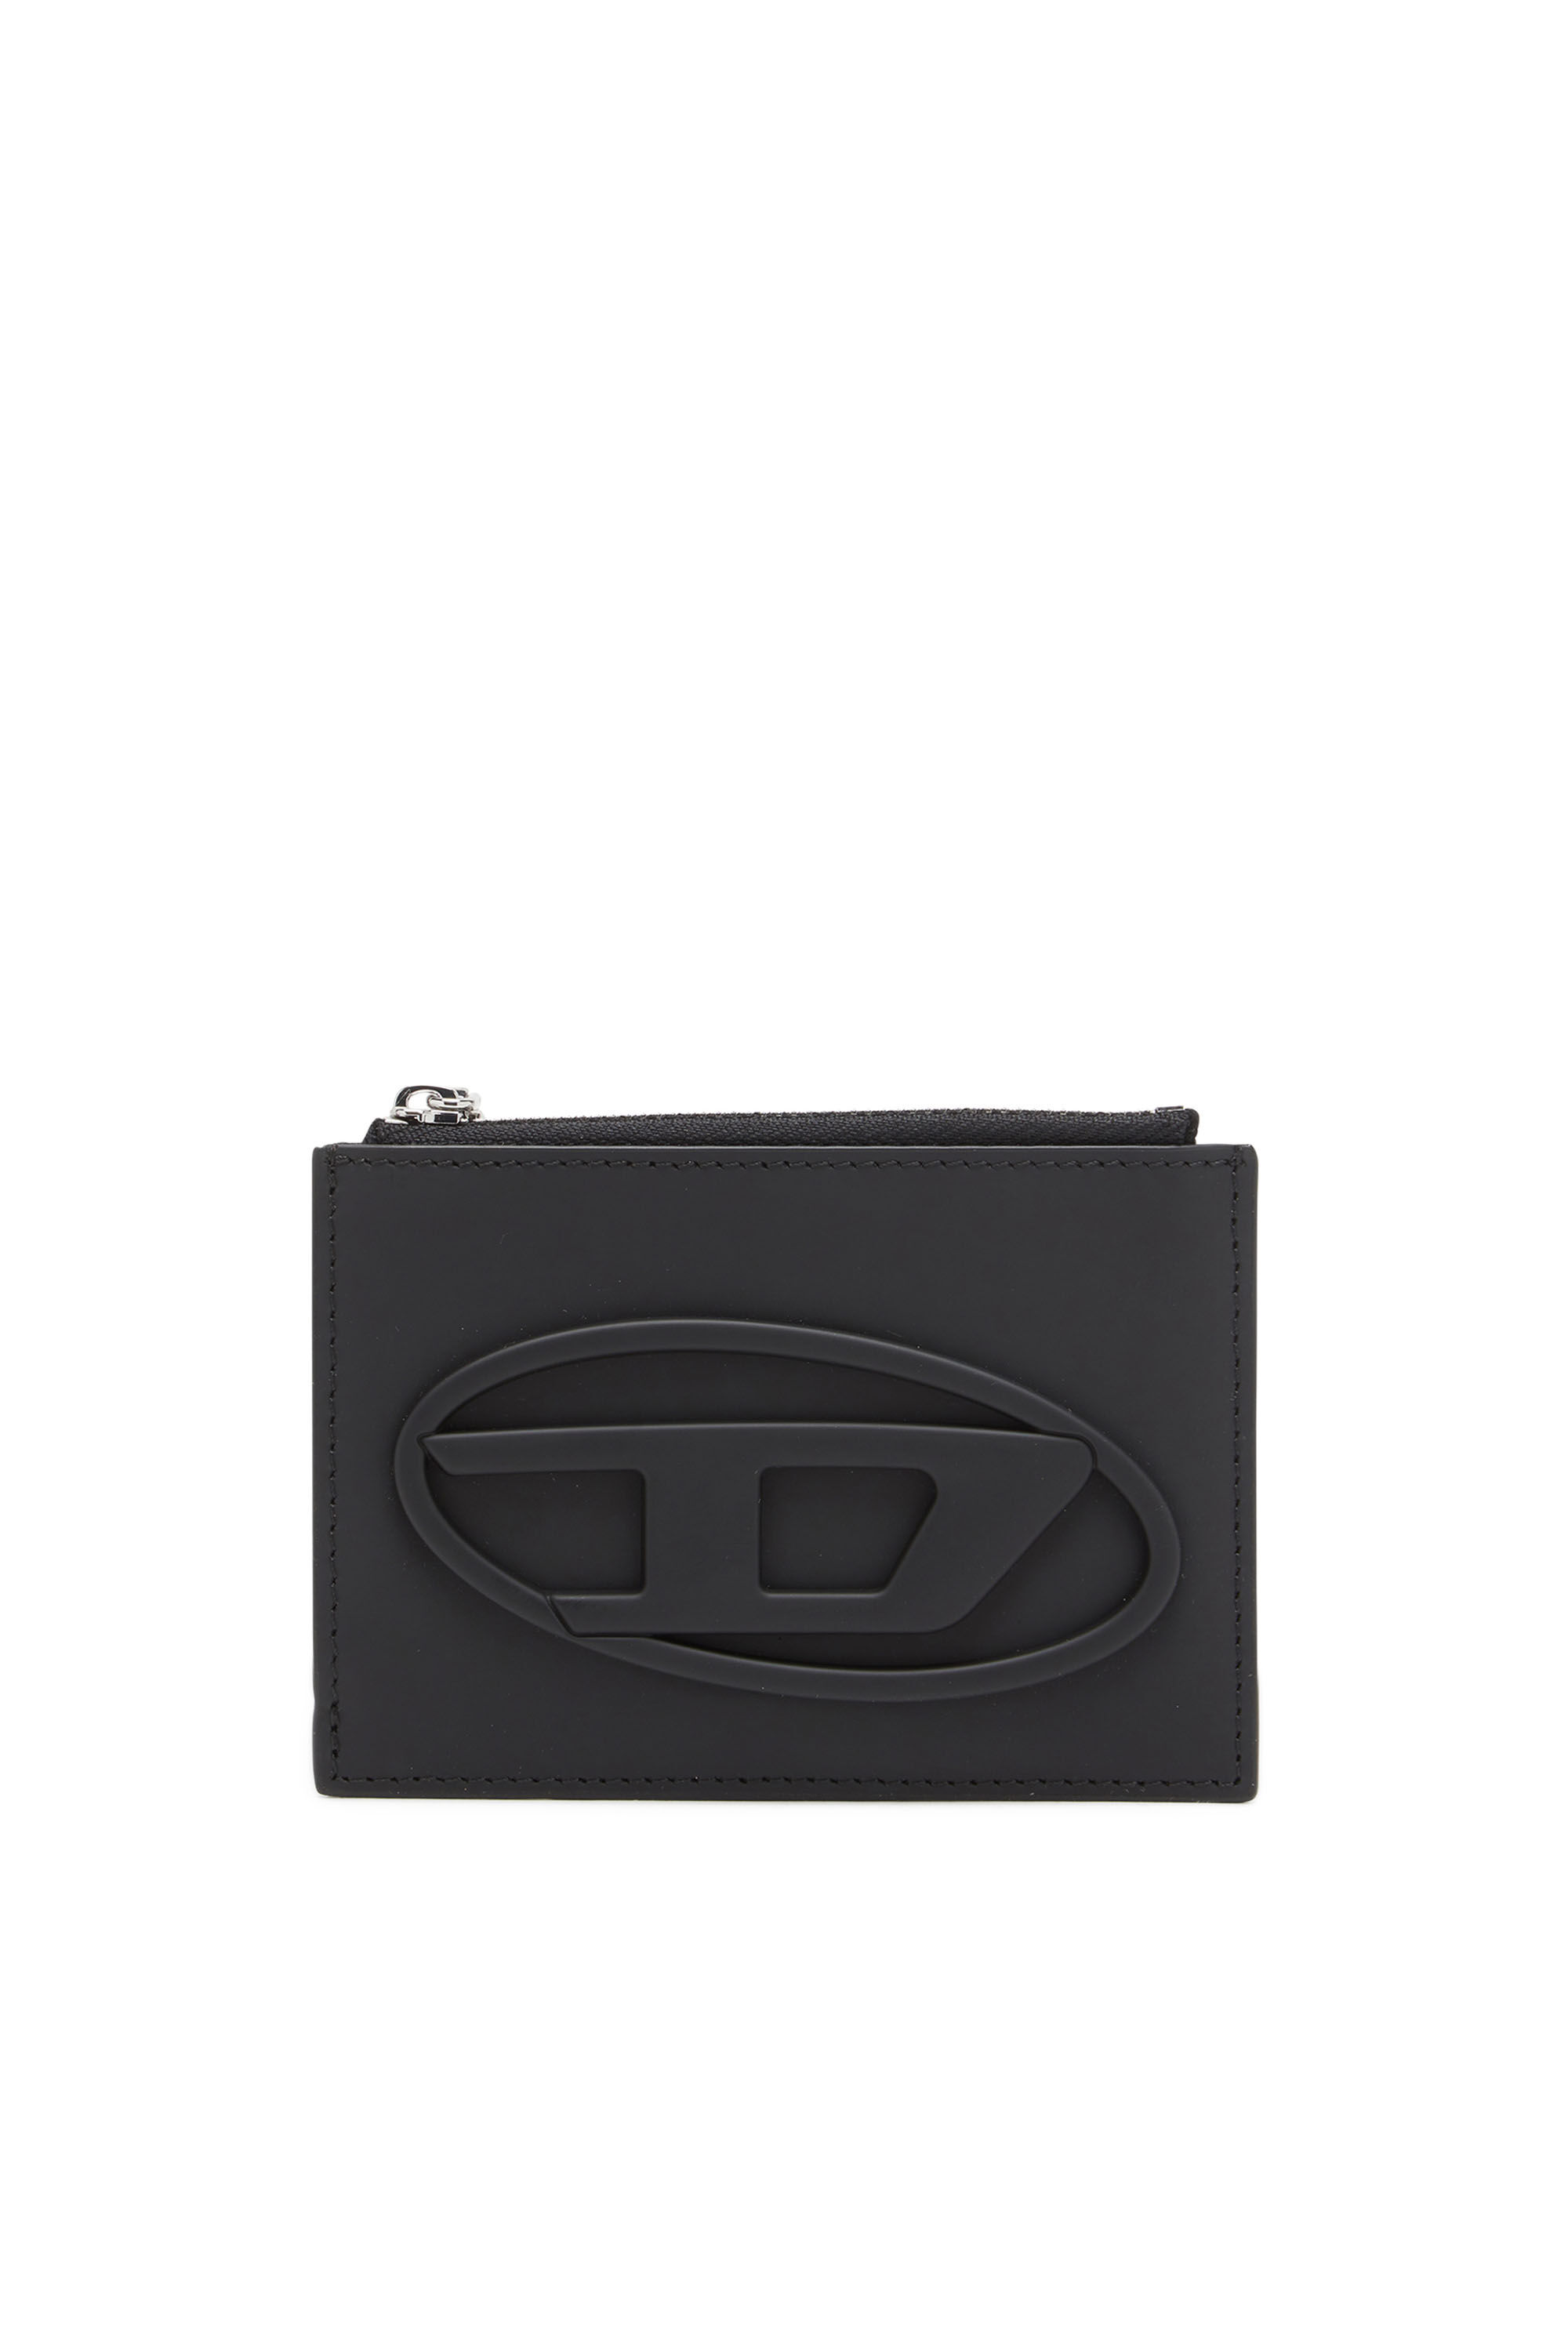 Diesel - 1DR CARD HOLDER I, Woman Card holder in matte leather in Black - Image 1